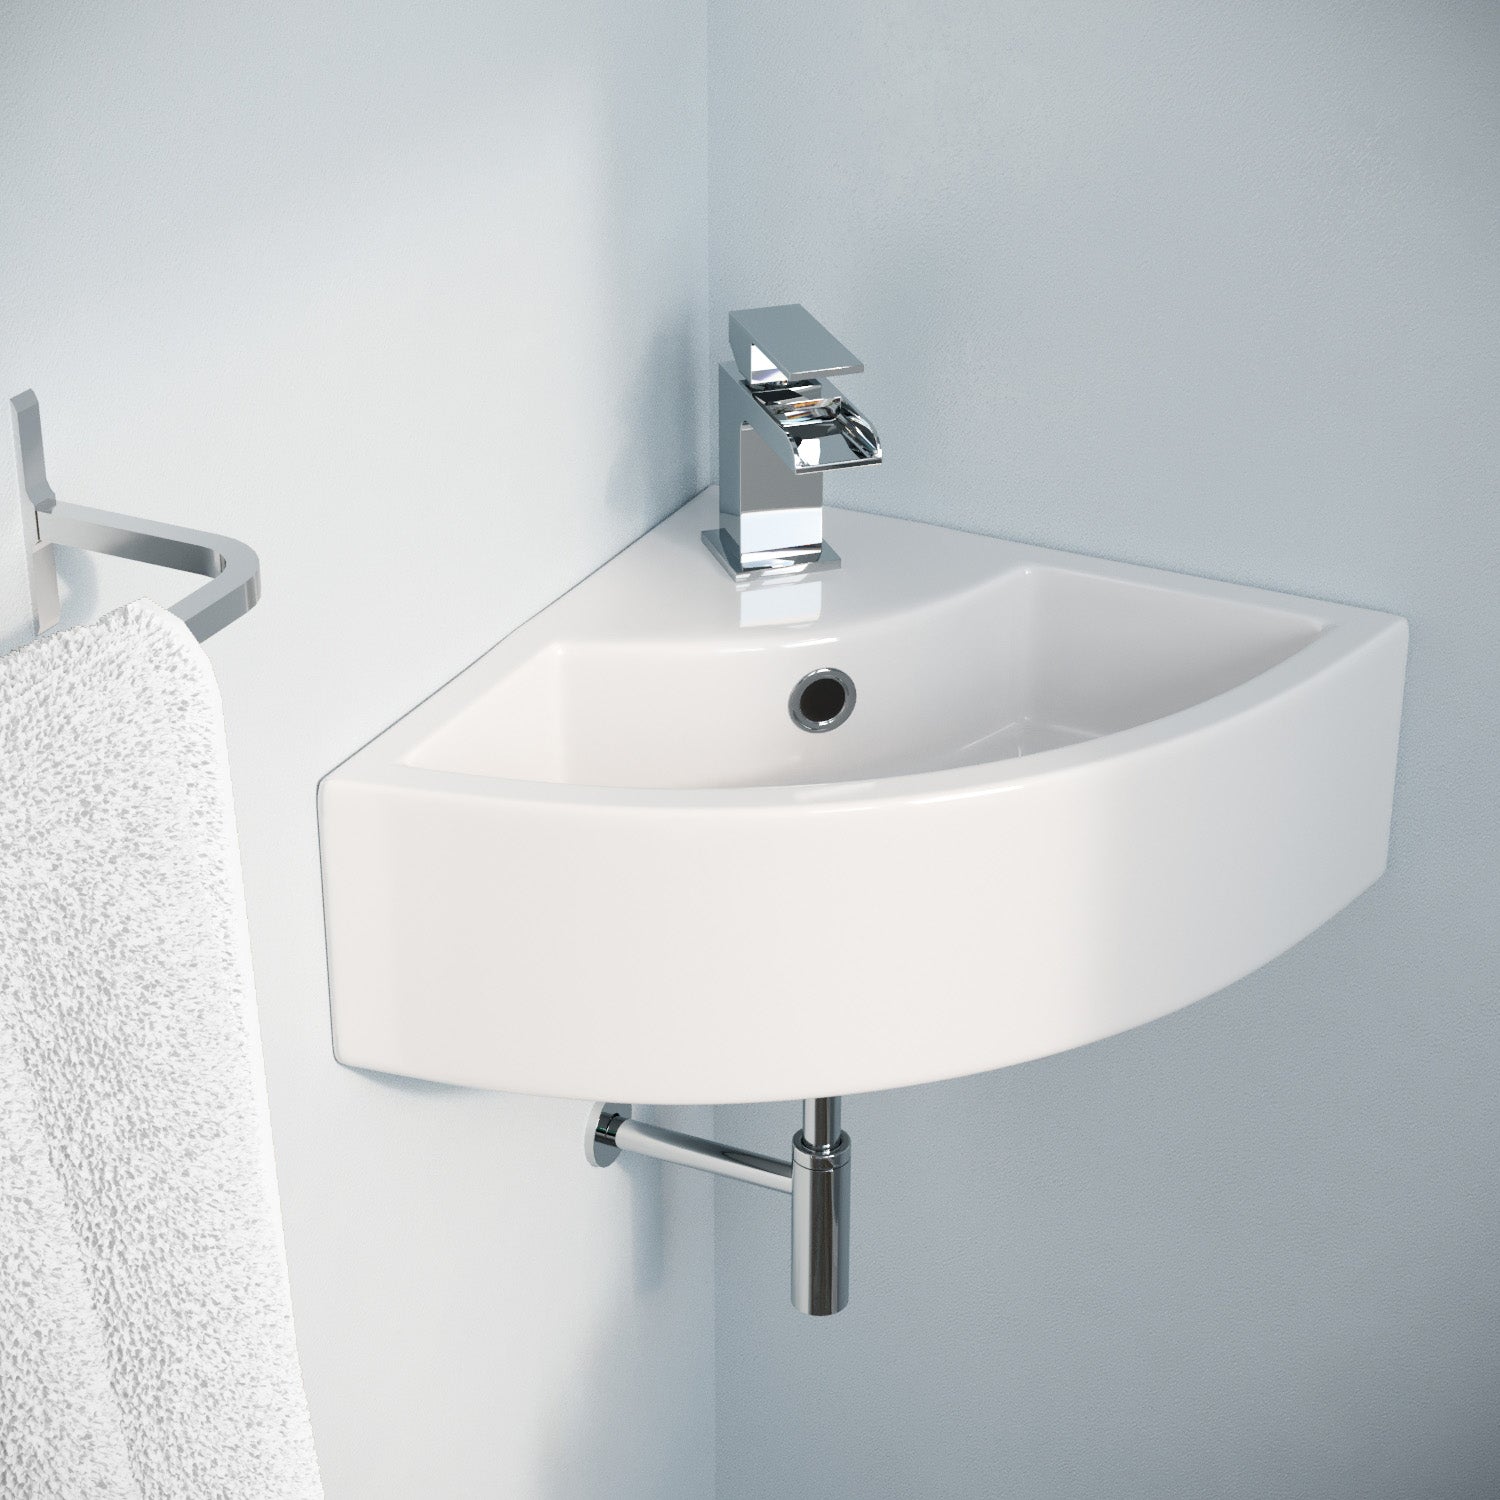 Tulla 450 x 325mm Compact Cloakroom Bathroom Wall Hung Hand Wash Corner Basin Sink